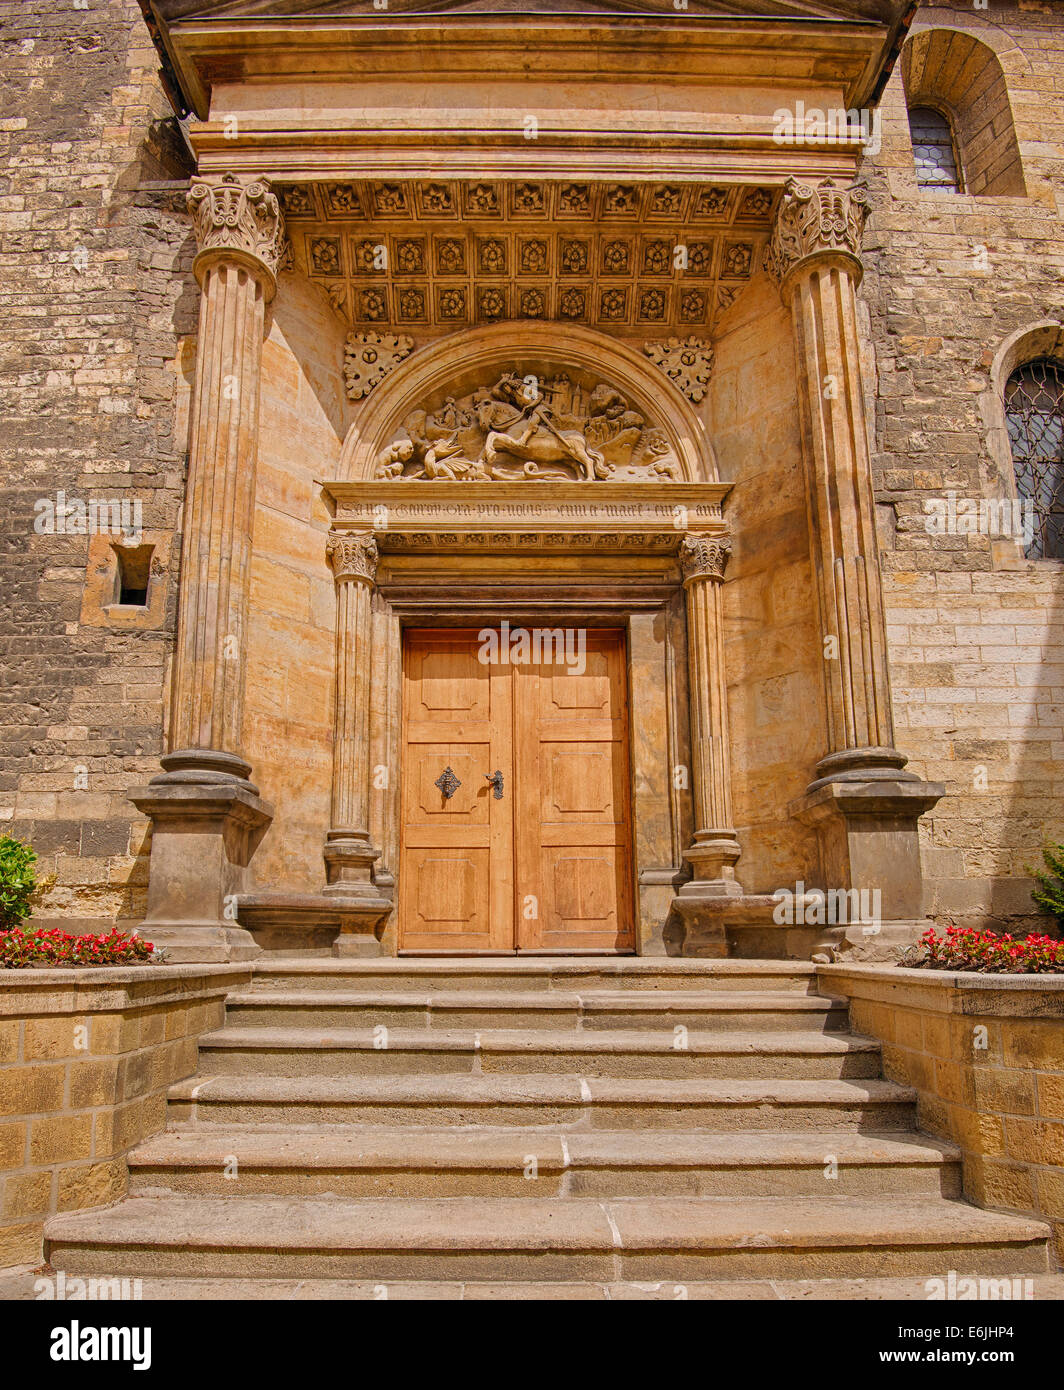 Sud del portale rinascimentale della Basilica di San Giorgio a Praga. Immagine hdr. Foto Stock